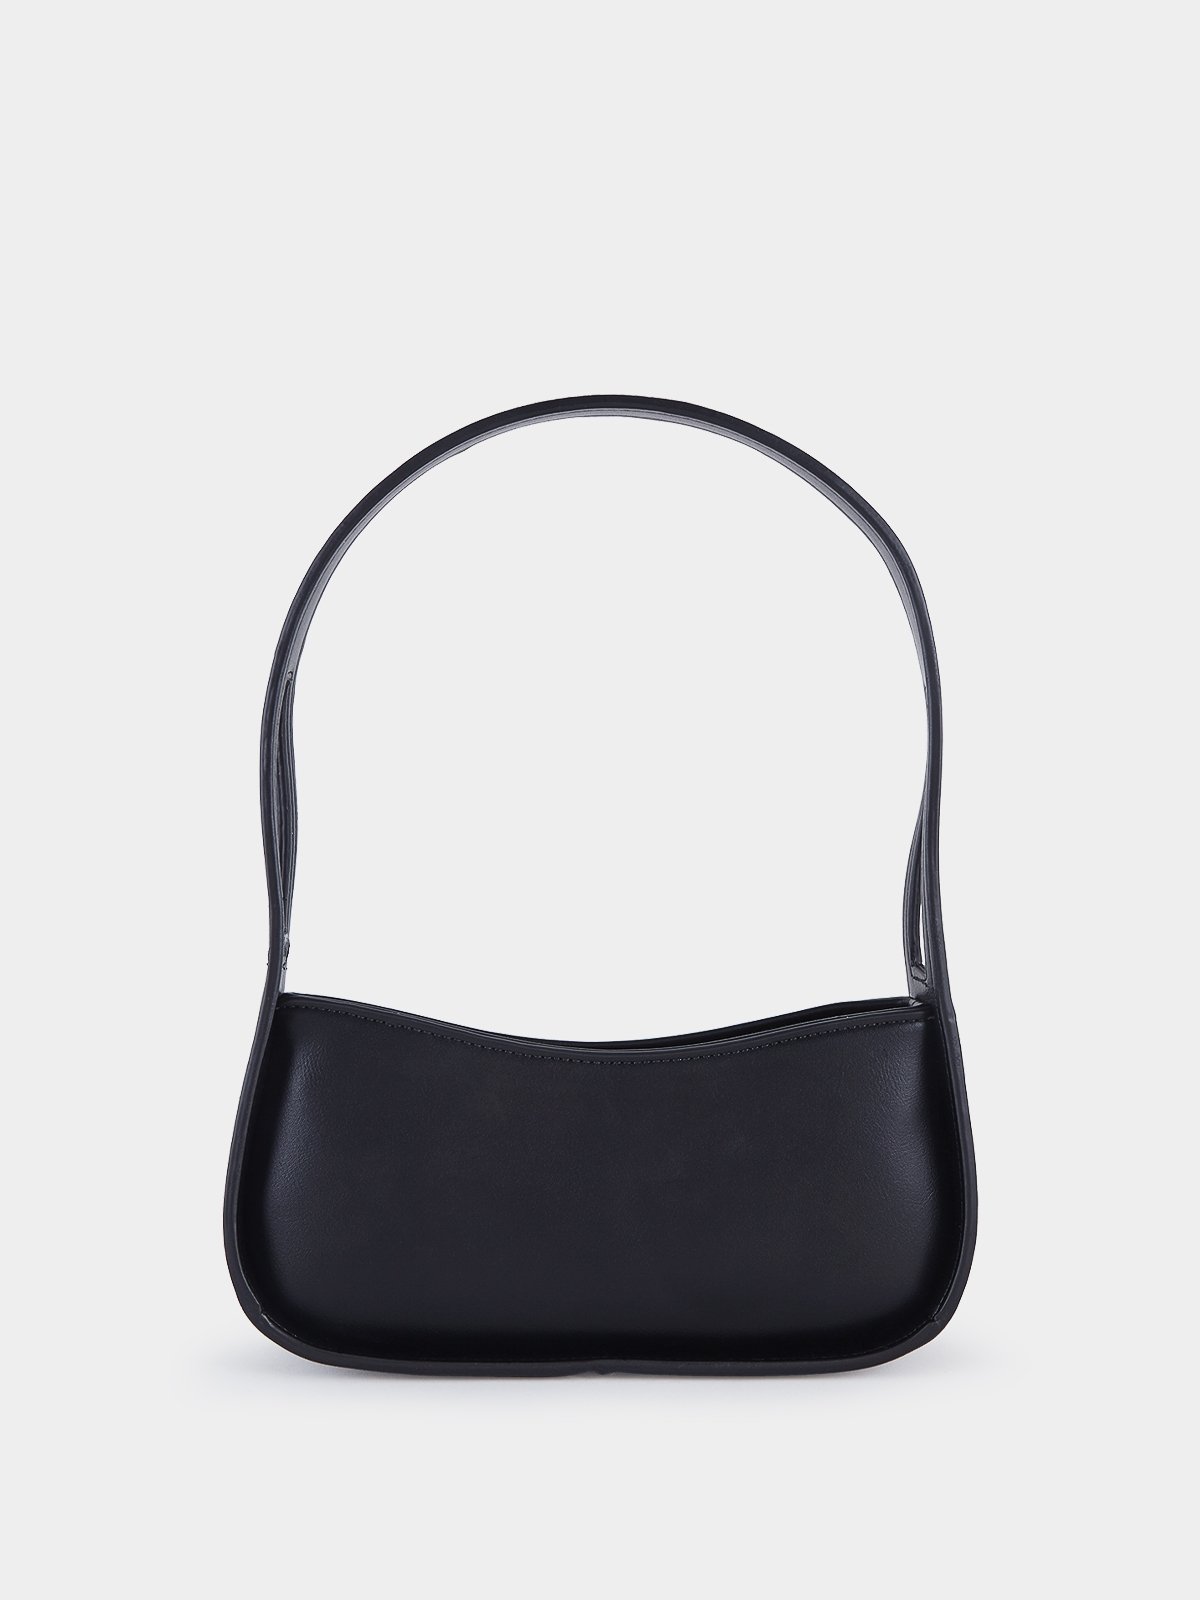 Details more than 69 minimalist shoulder bag super hot - in.duhocakina